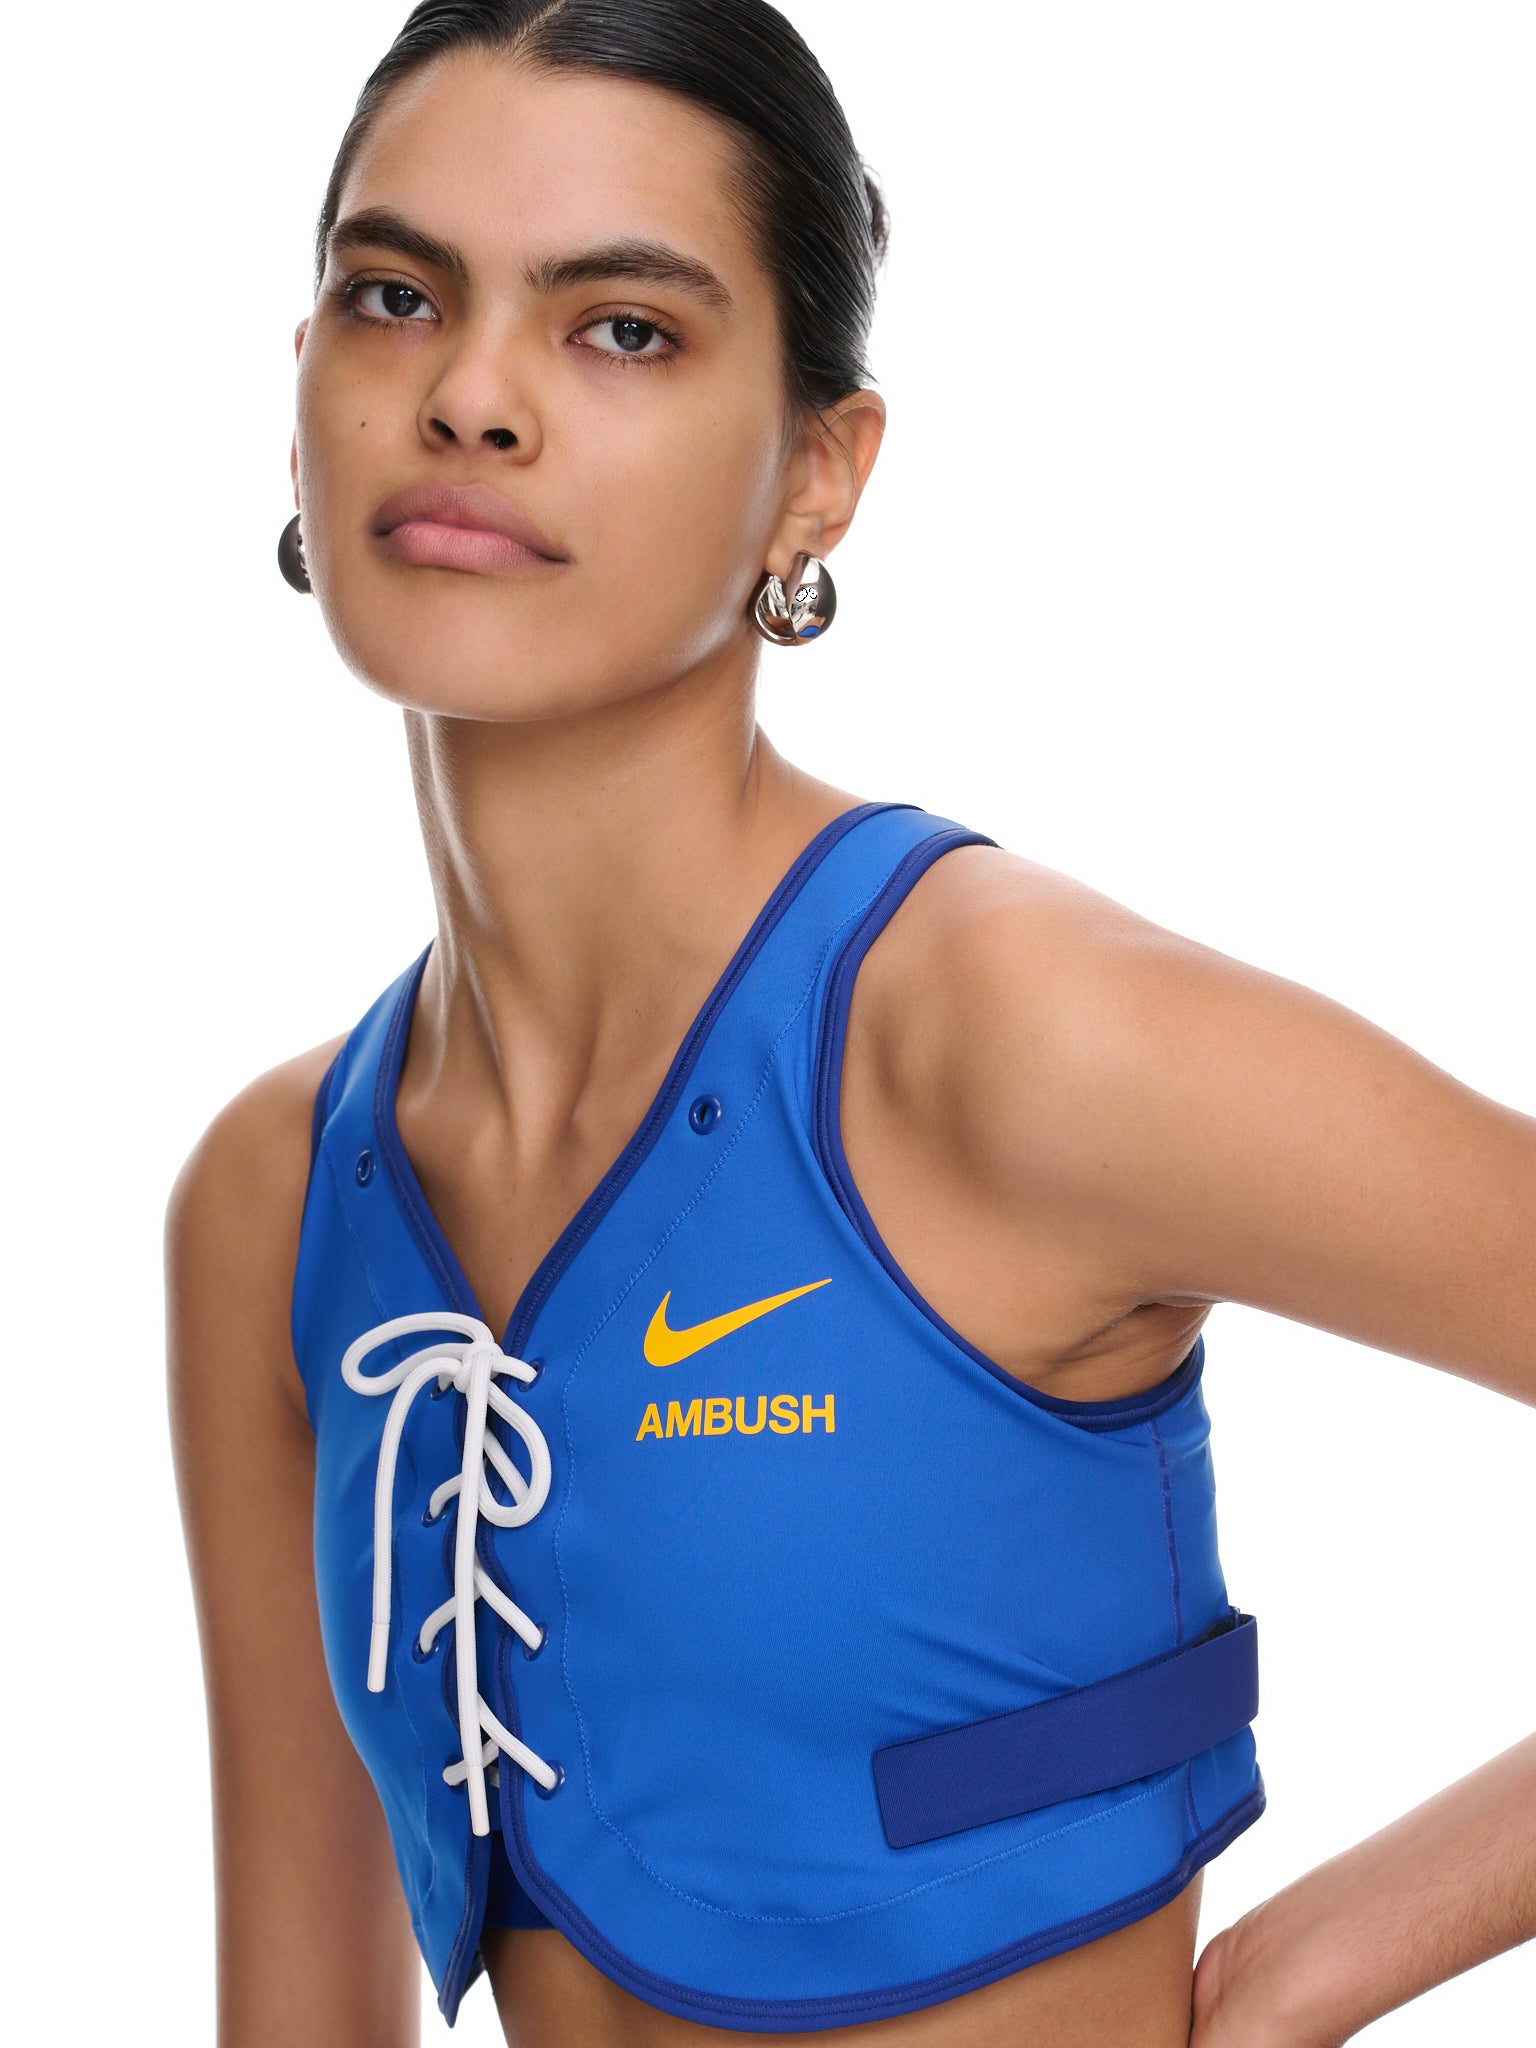 Nike x Ambush Women's Top in Gold, Size: Small | DB1613-723